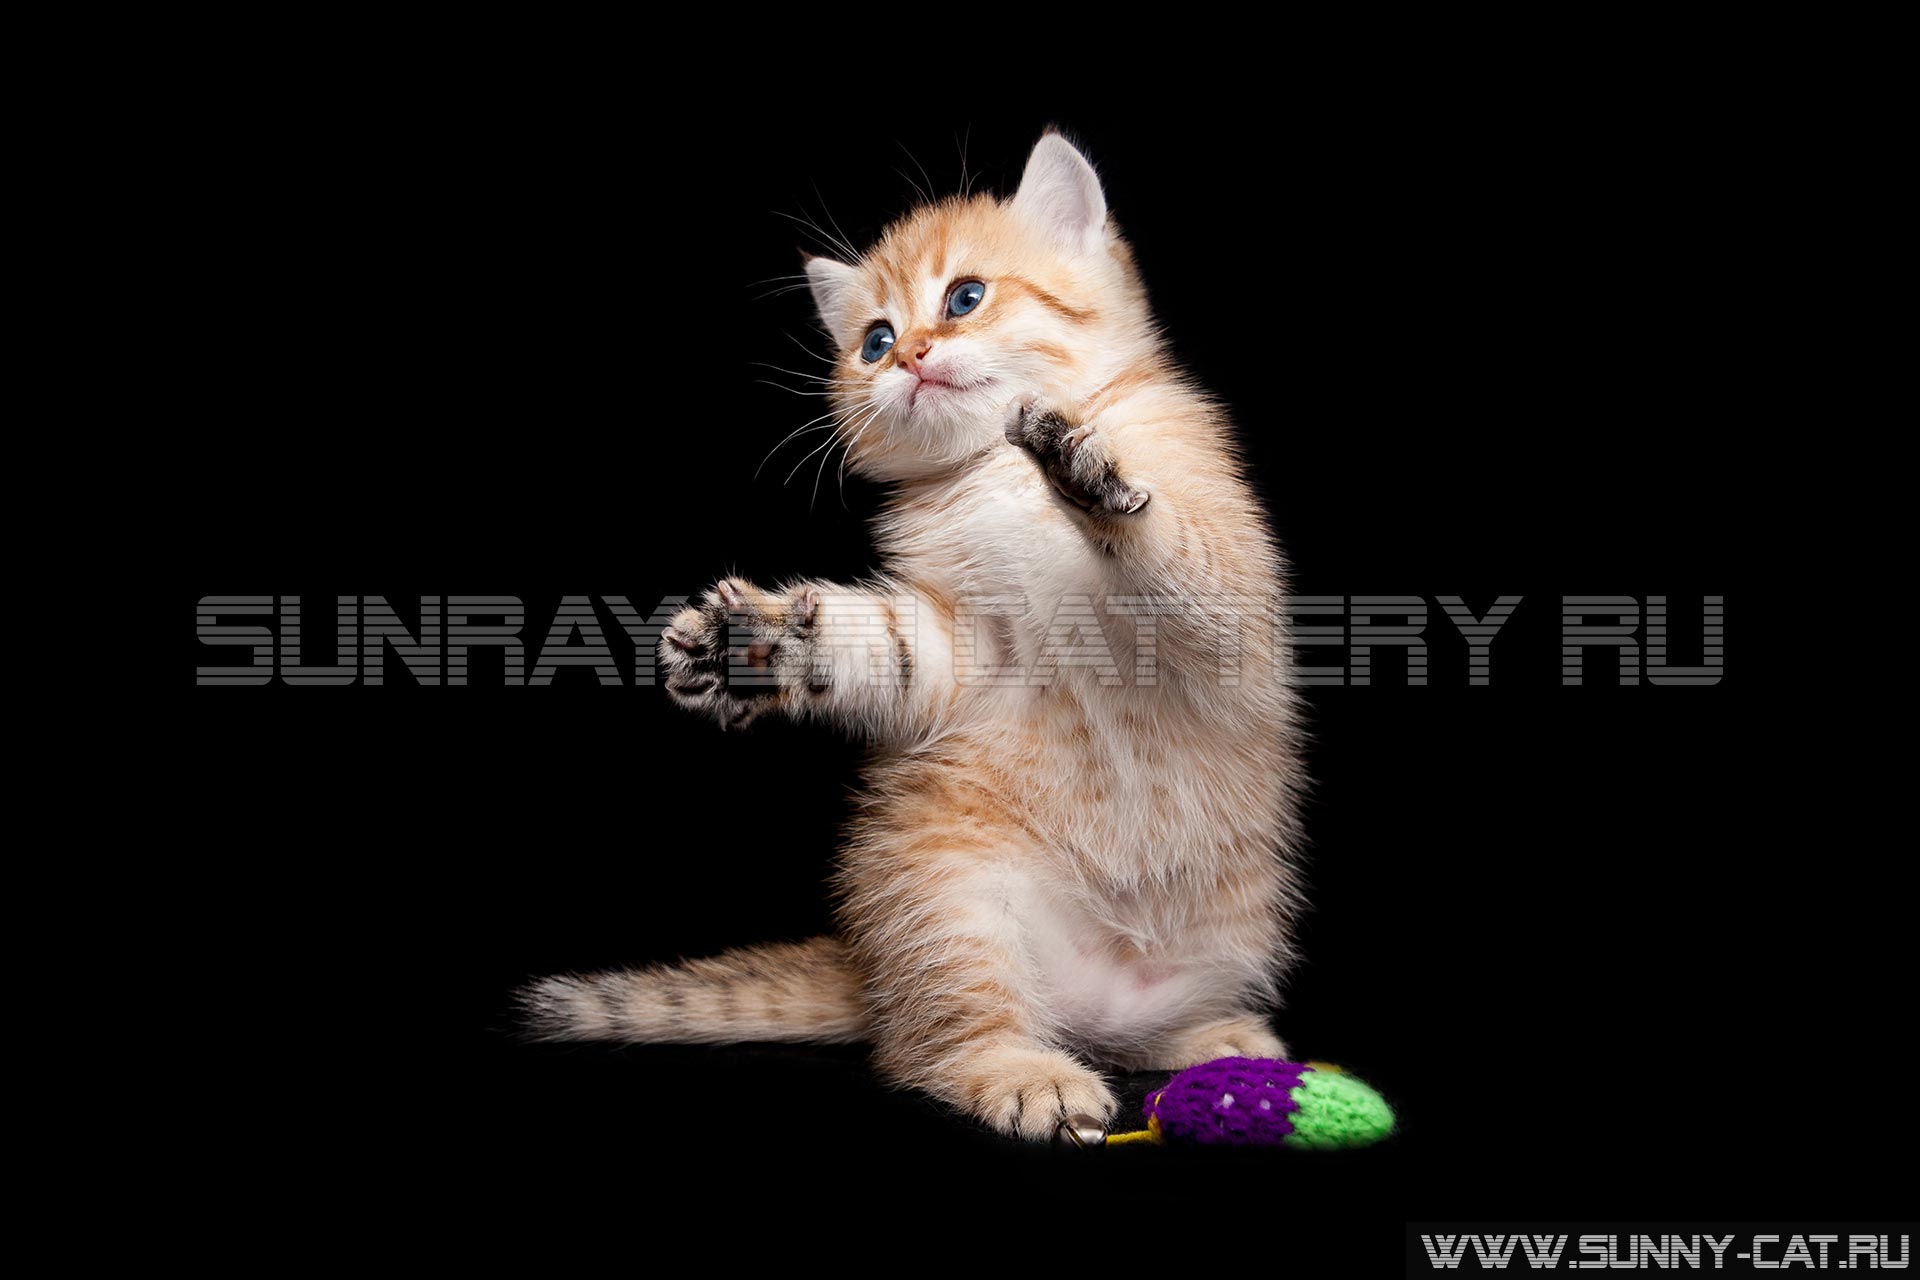 Котенок играет стоя на задних лапах, рыжий игривый котенок смешно стоит на задних лапках рядом с игрушкой на черном фоне